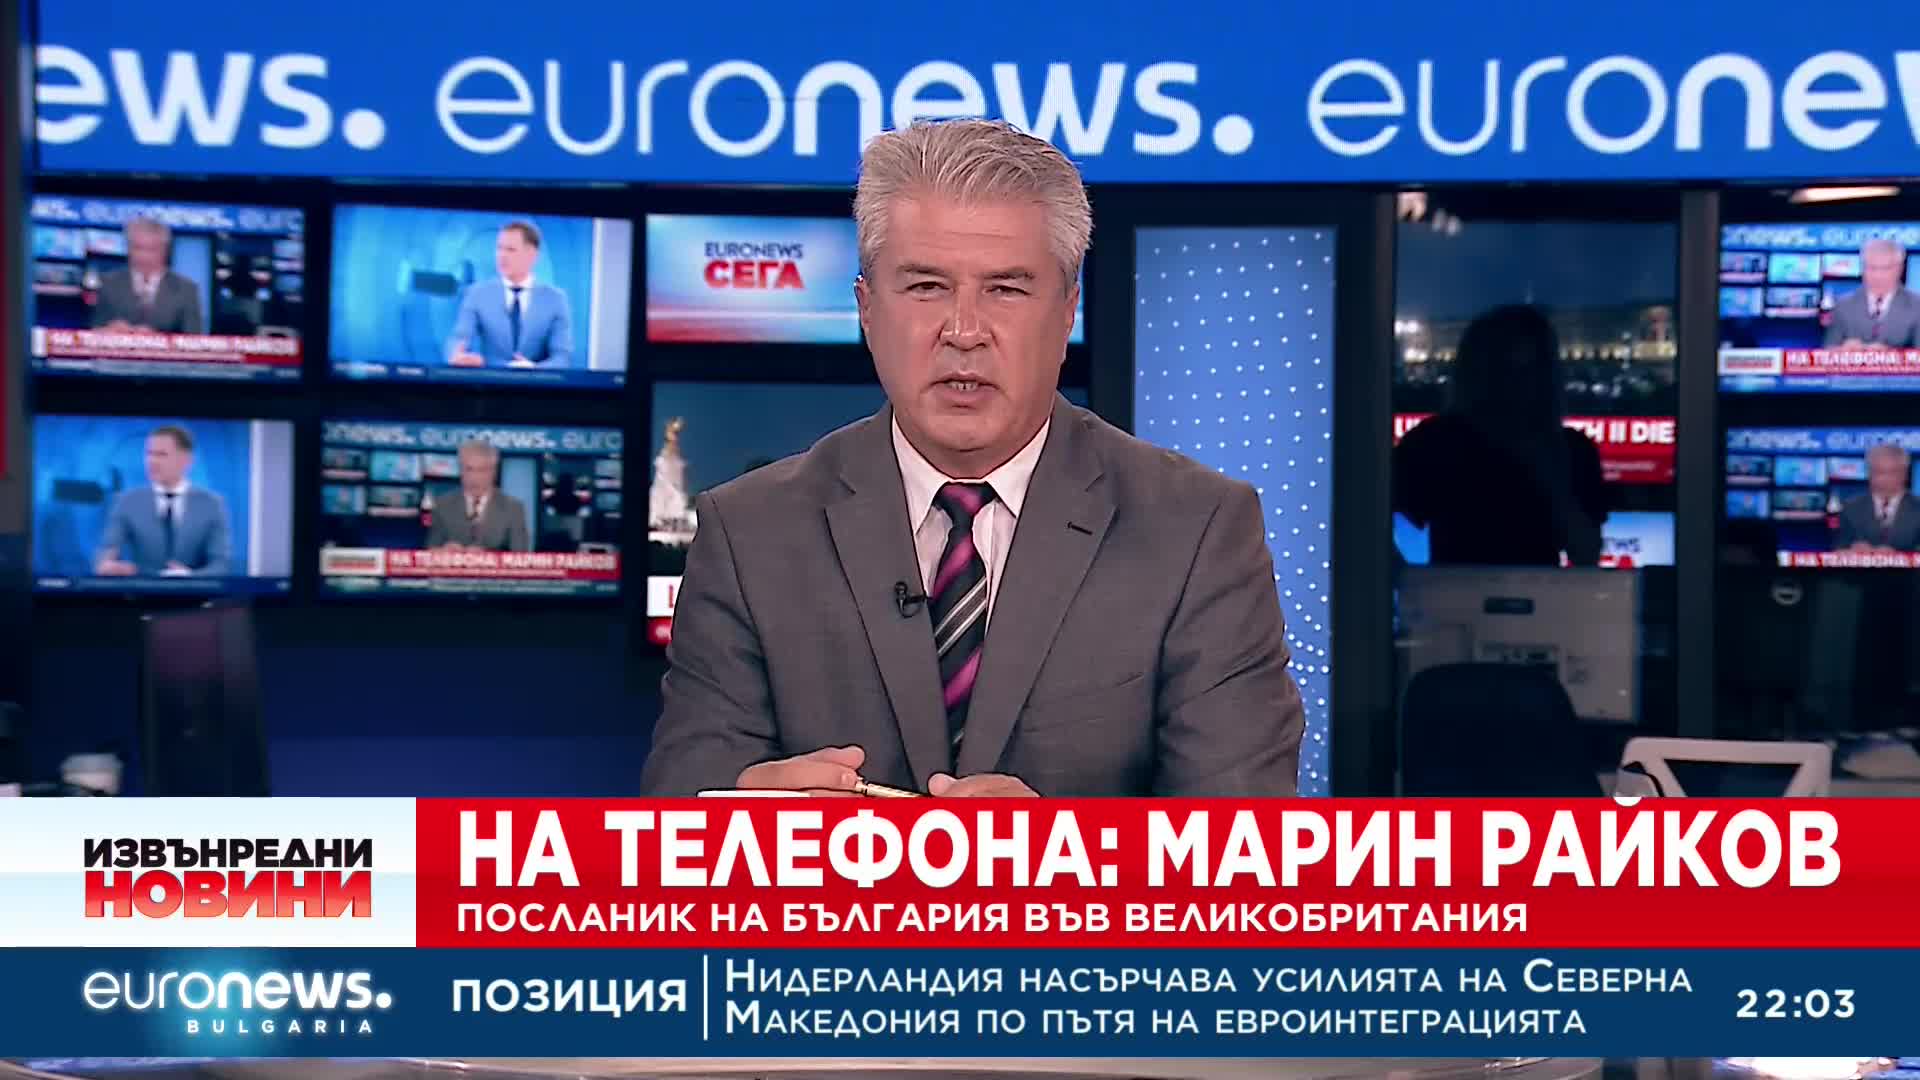 Българи от Великобритания за Euronews: Трябва да свикнем - химнът вече ще е „Господ да пази краля“